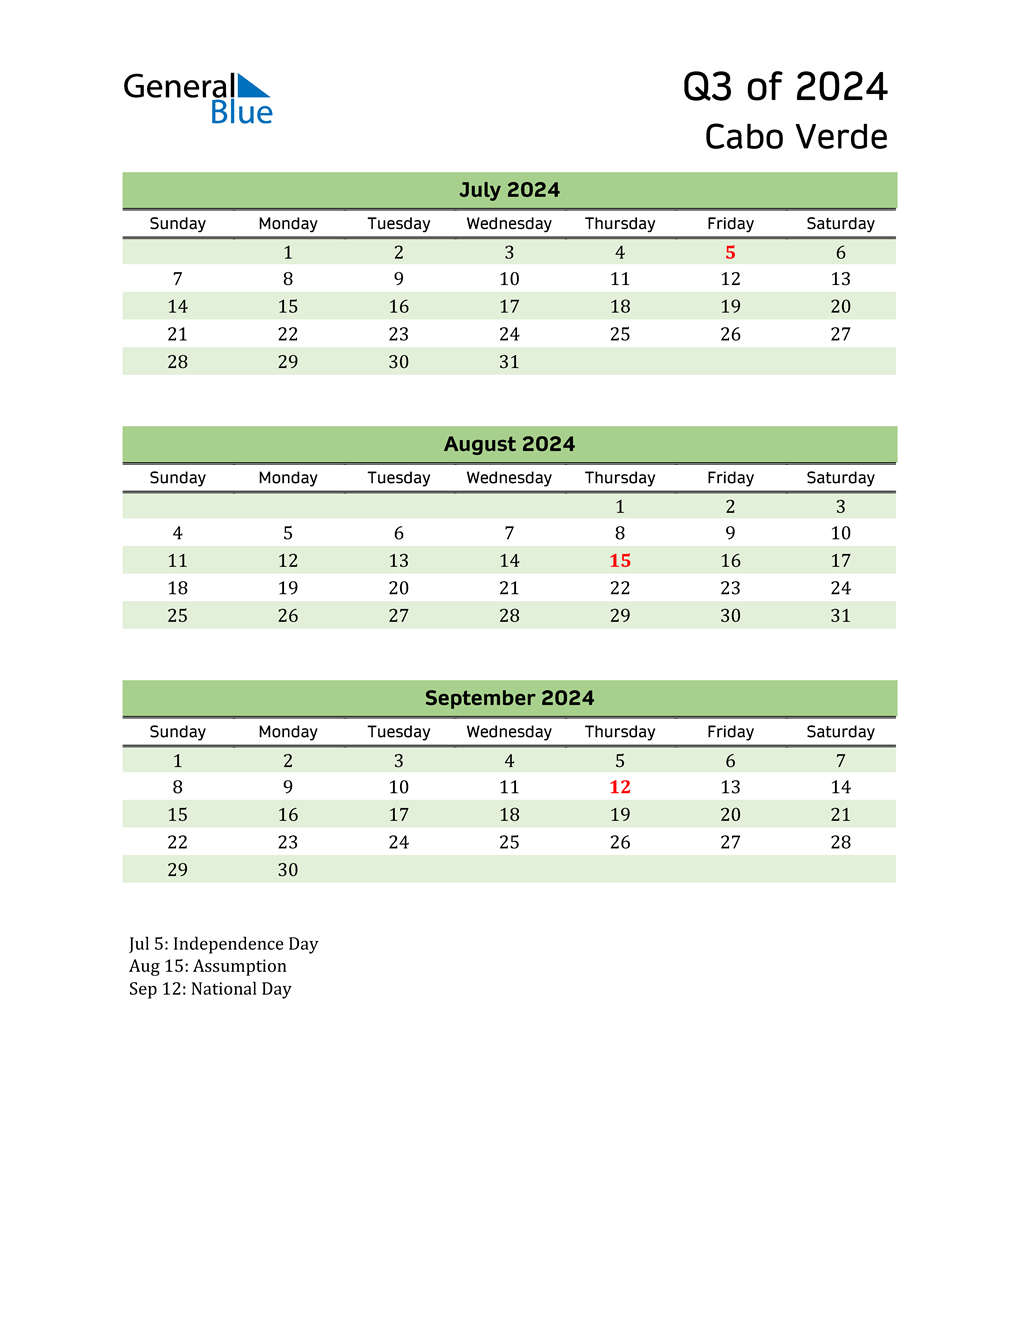  Quarterly Calendar 2024 with Cabo Verde Holidays 